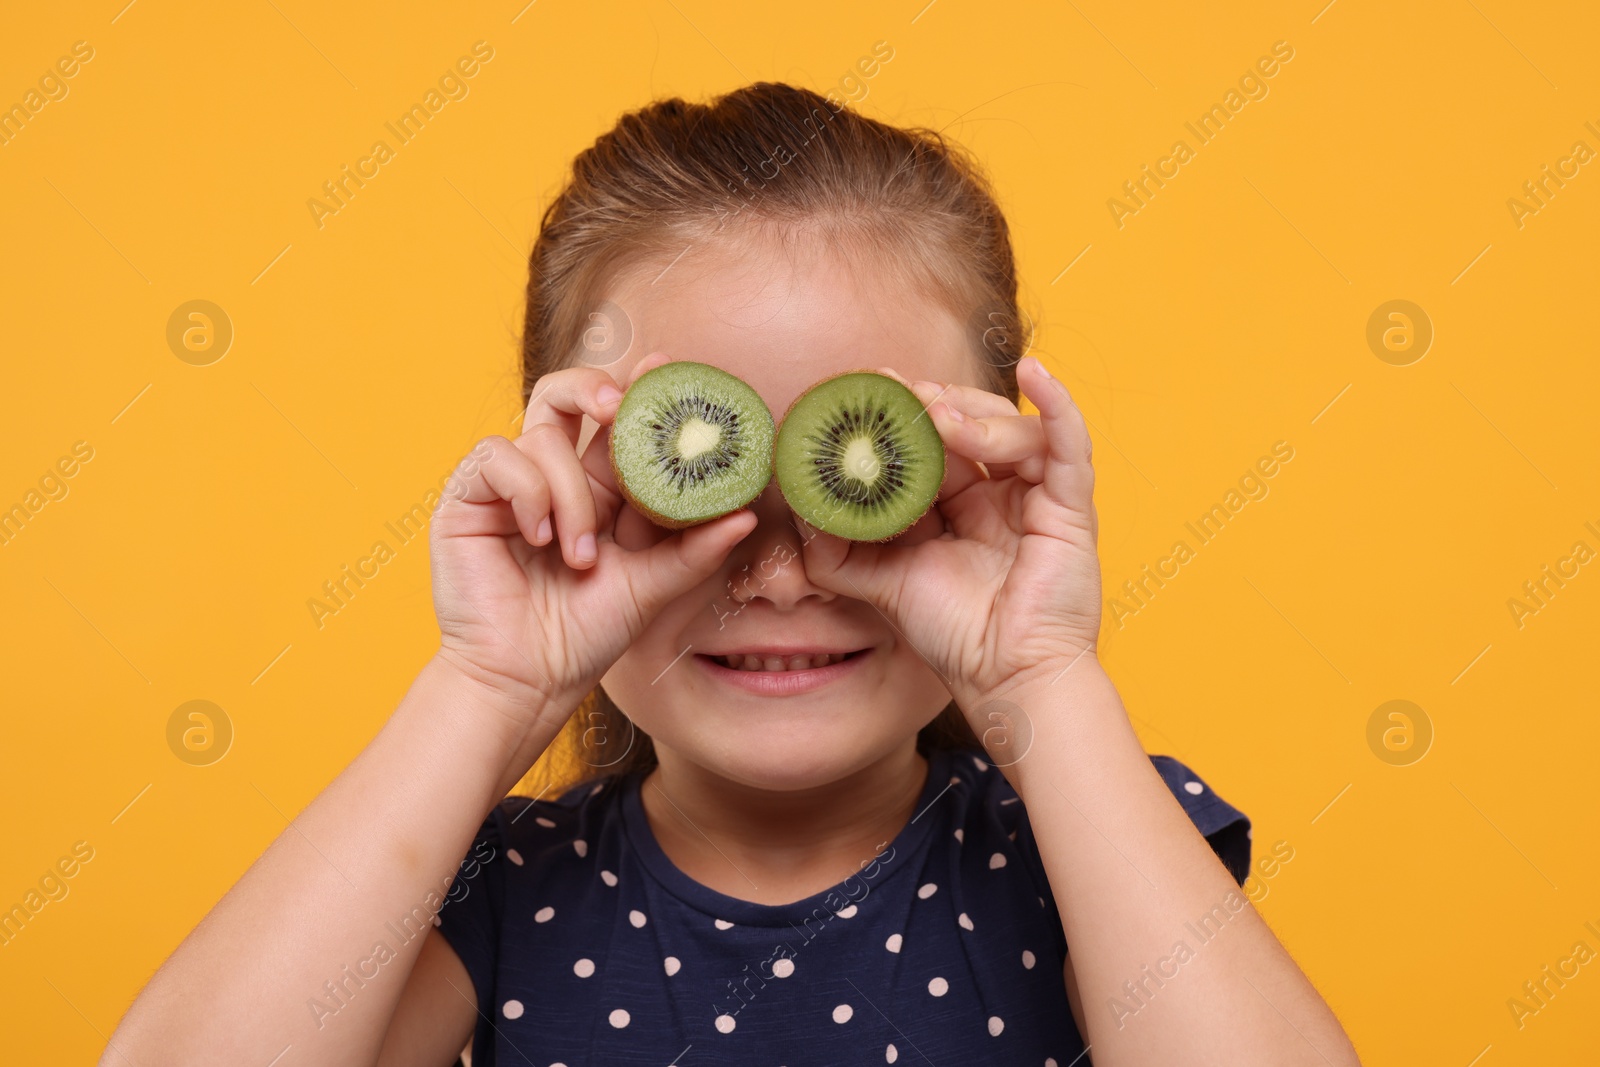 Photo of Smiling girl covering eyes with halves of fresh kiwi on orange background